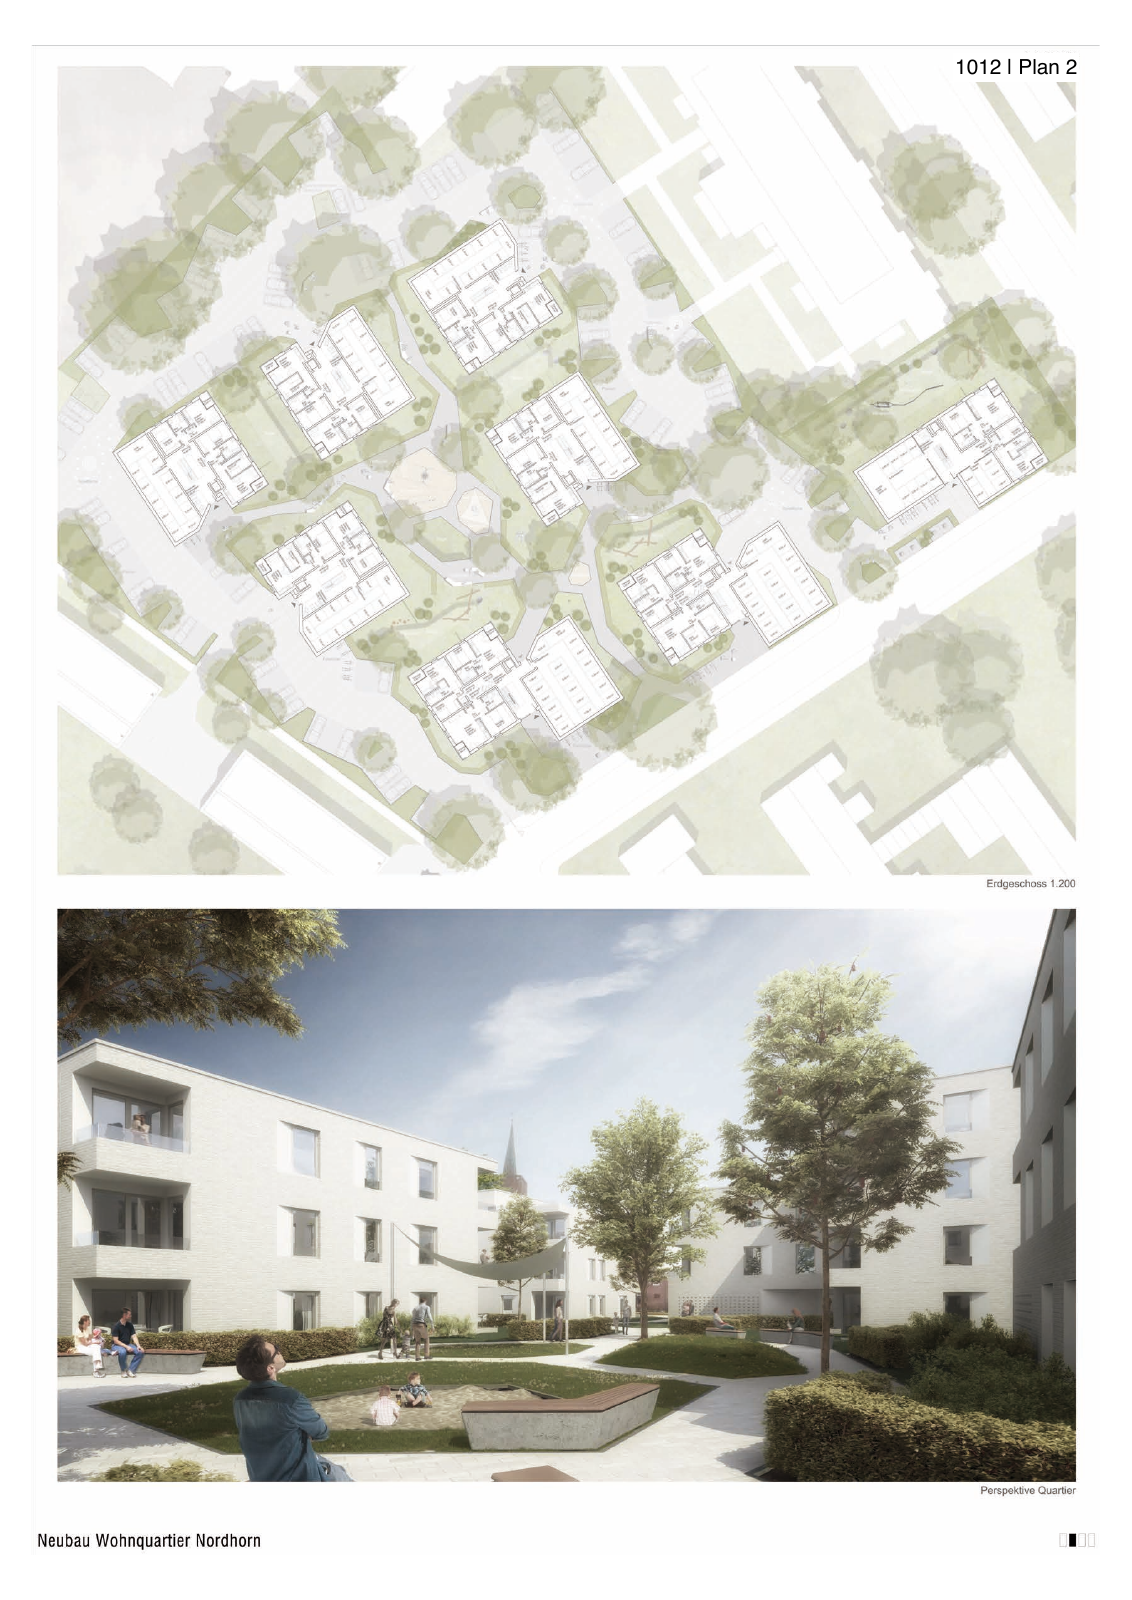 Vorschau Neubau von 100 Wohneinheiten [Nordhorn] Seite 17